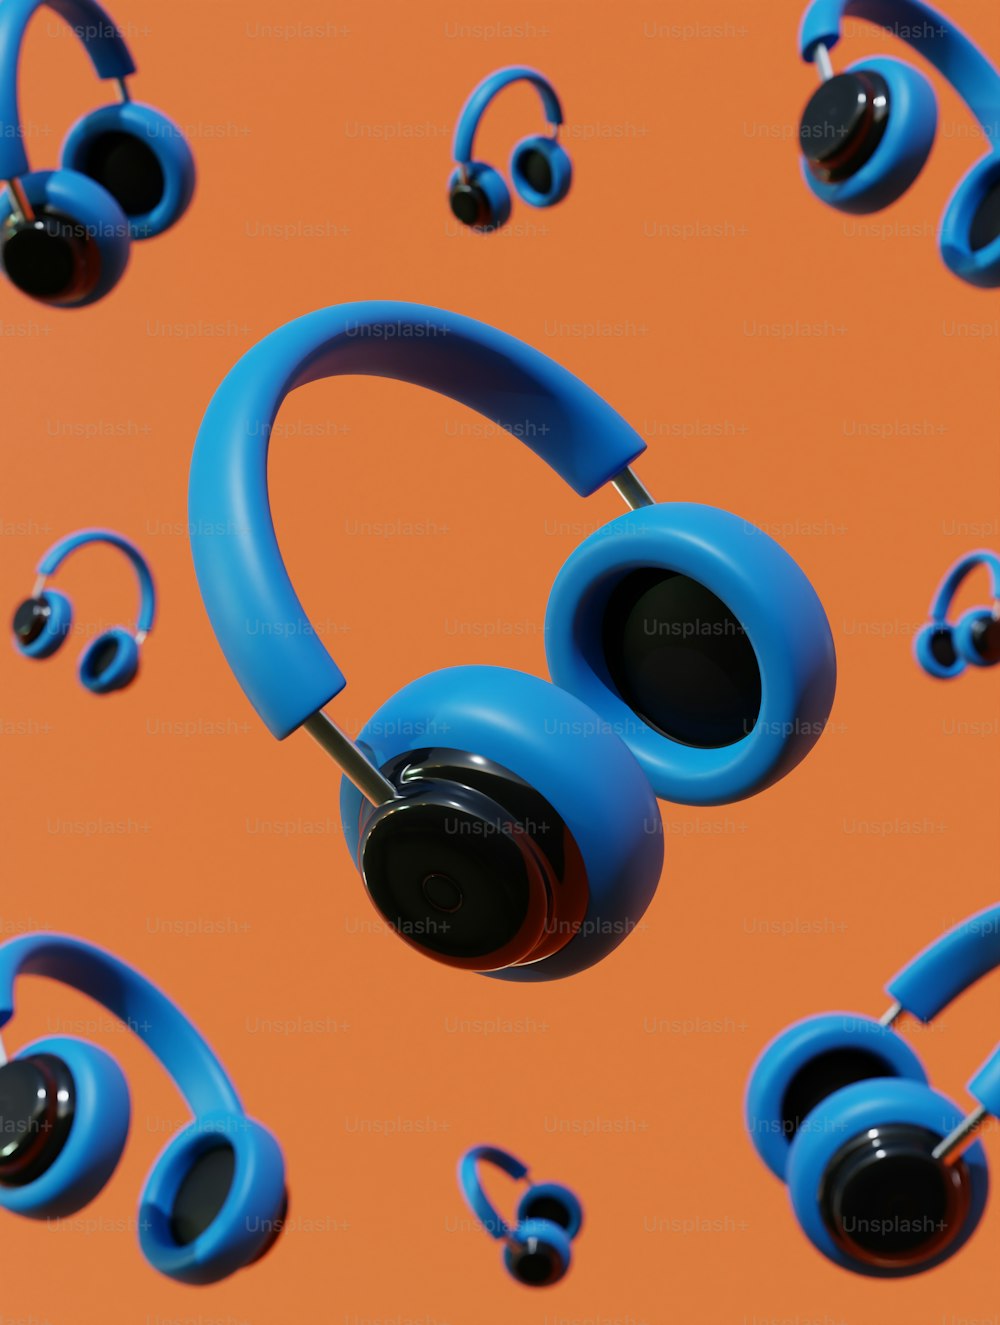 Un grupo de auriculares azules sentados uno al lado del otro